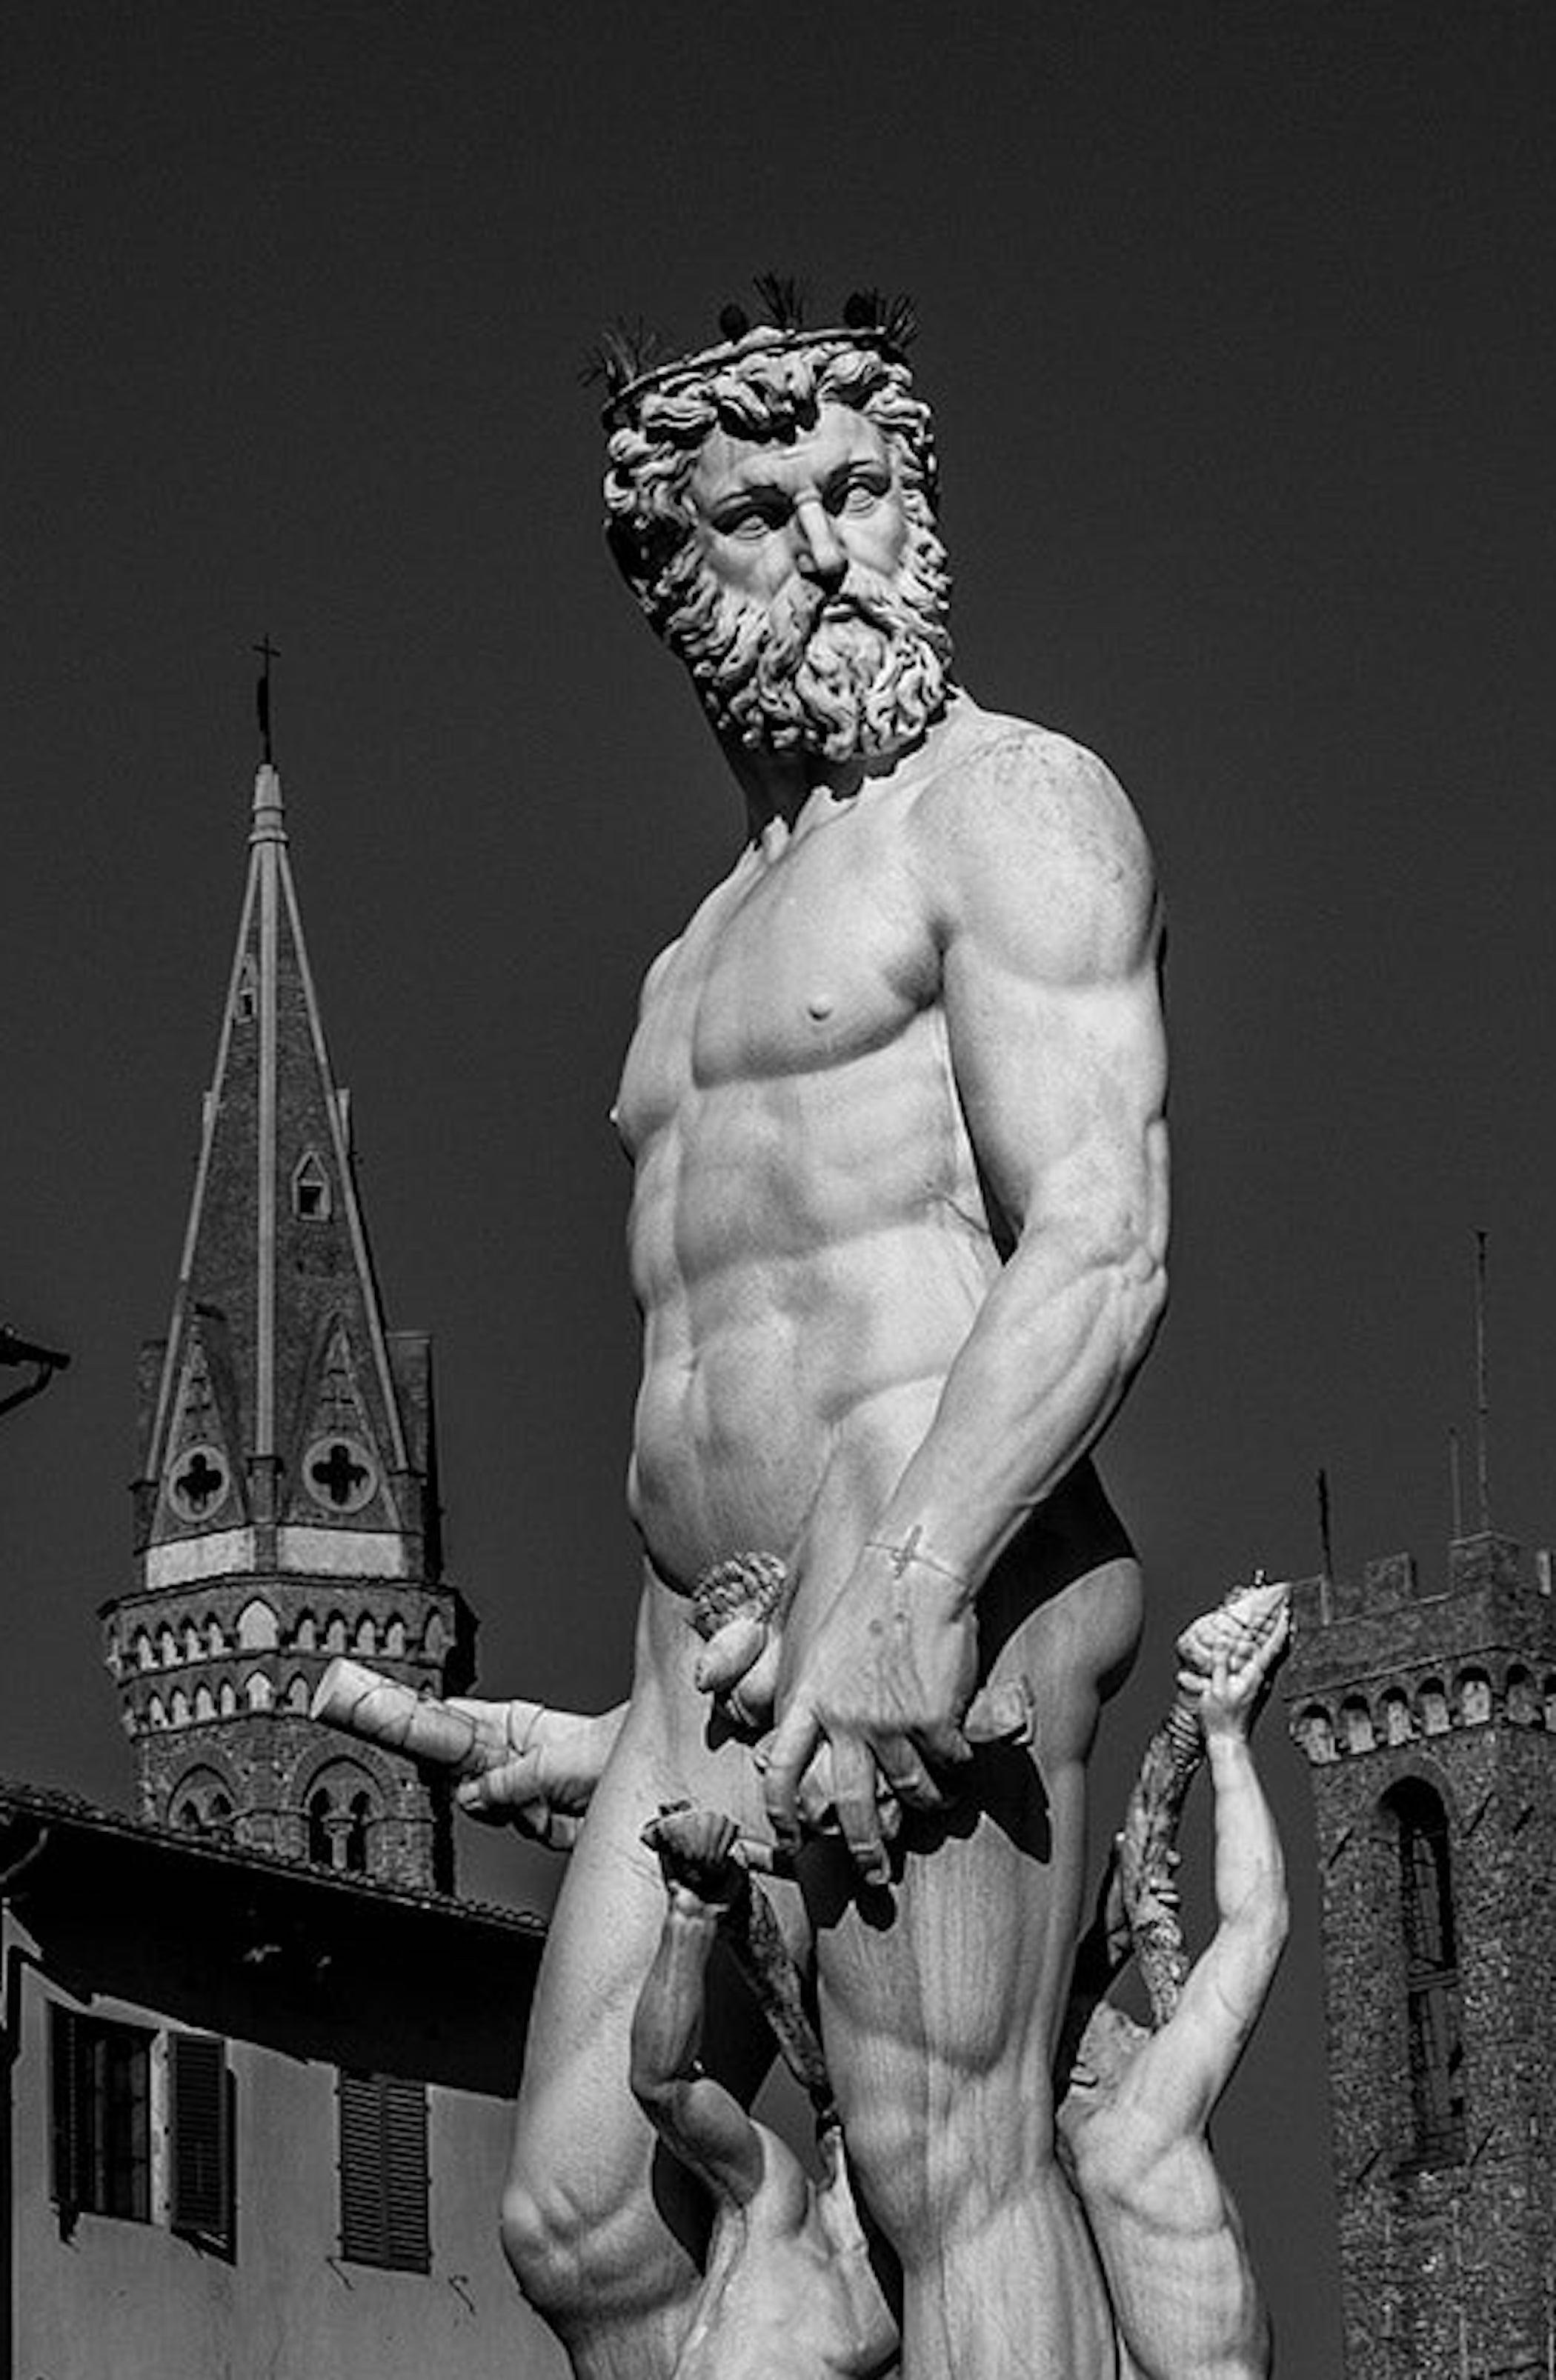 Florenz. Figurative Landschaftsfotografie in Schwarz-Weiß in limitierter Auflage (Zeitgenössisch), Photograph, von Juan Pablo Castro